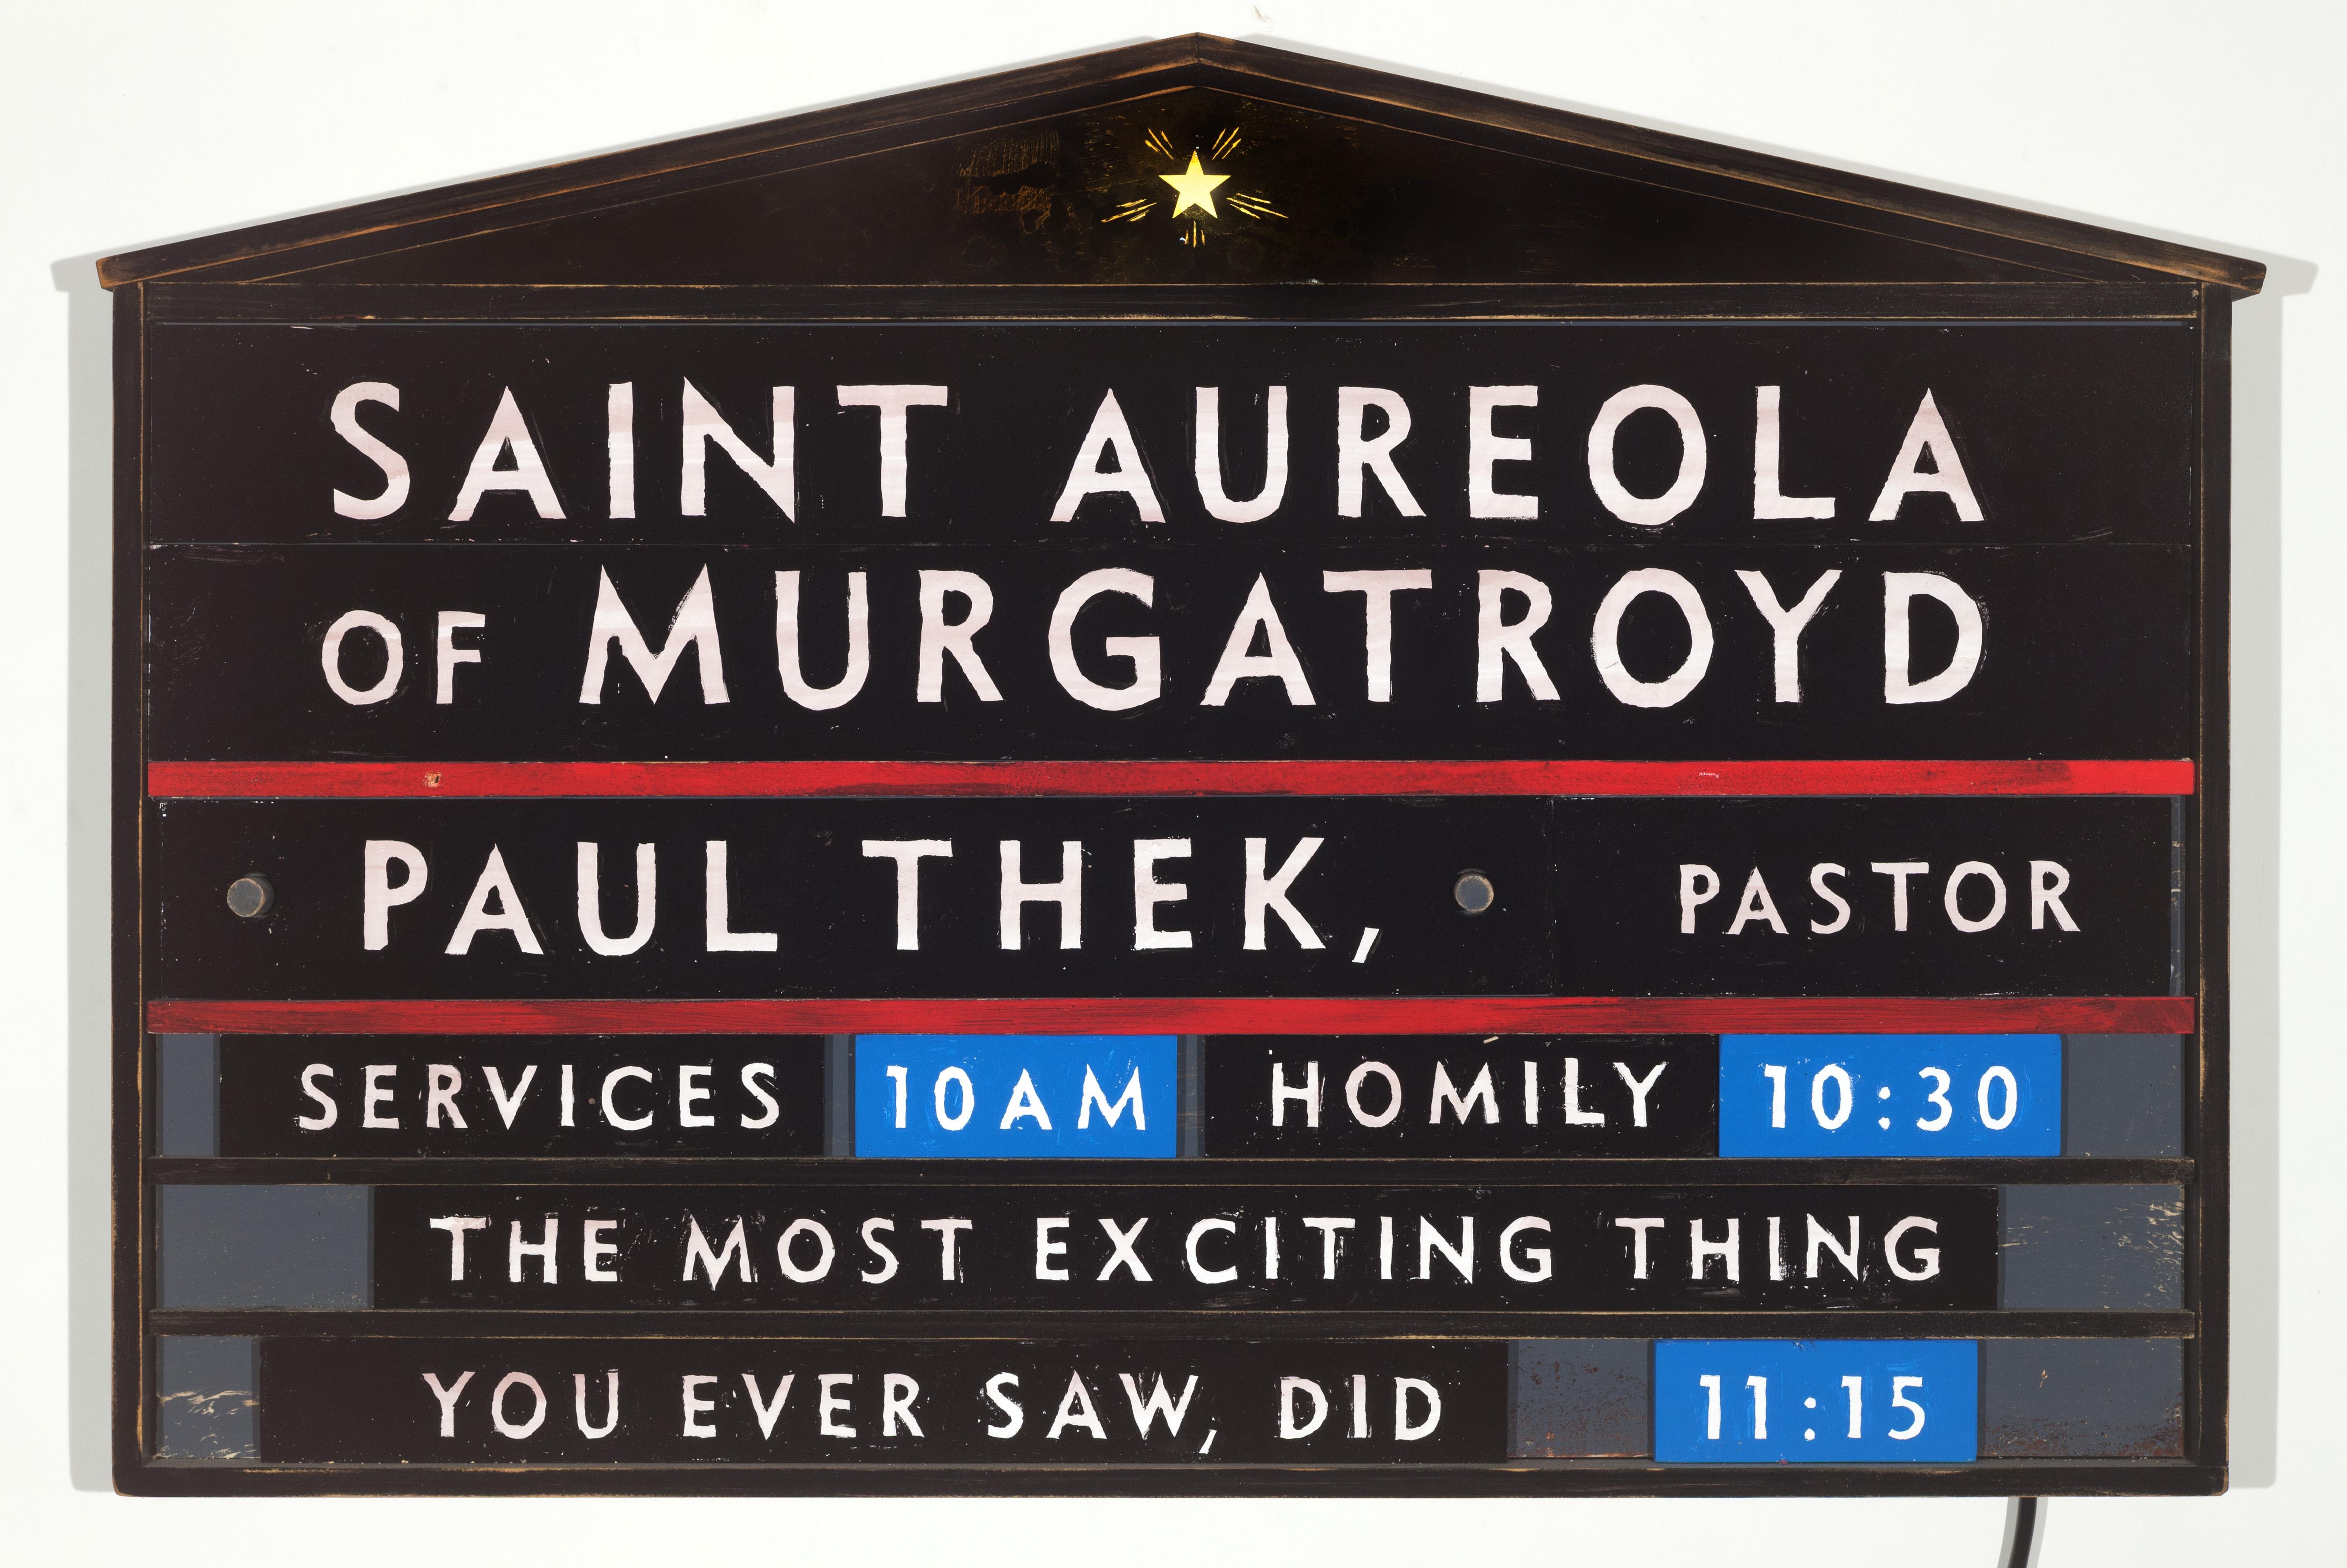 Saint Aureola de Murgatroyd, Paul Thek, Pastor (enseigne éclairée)